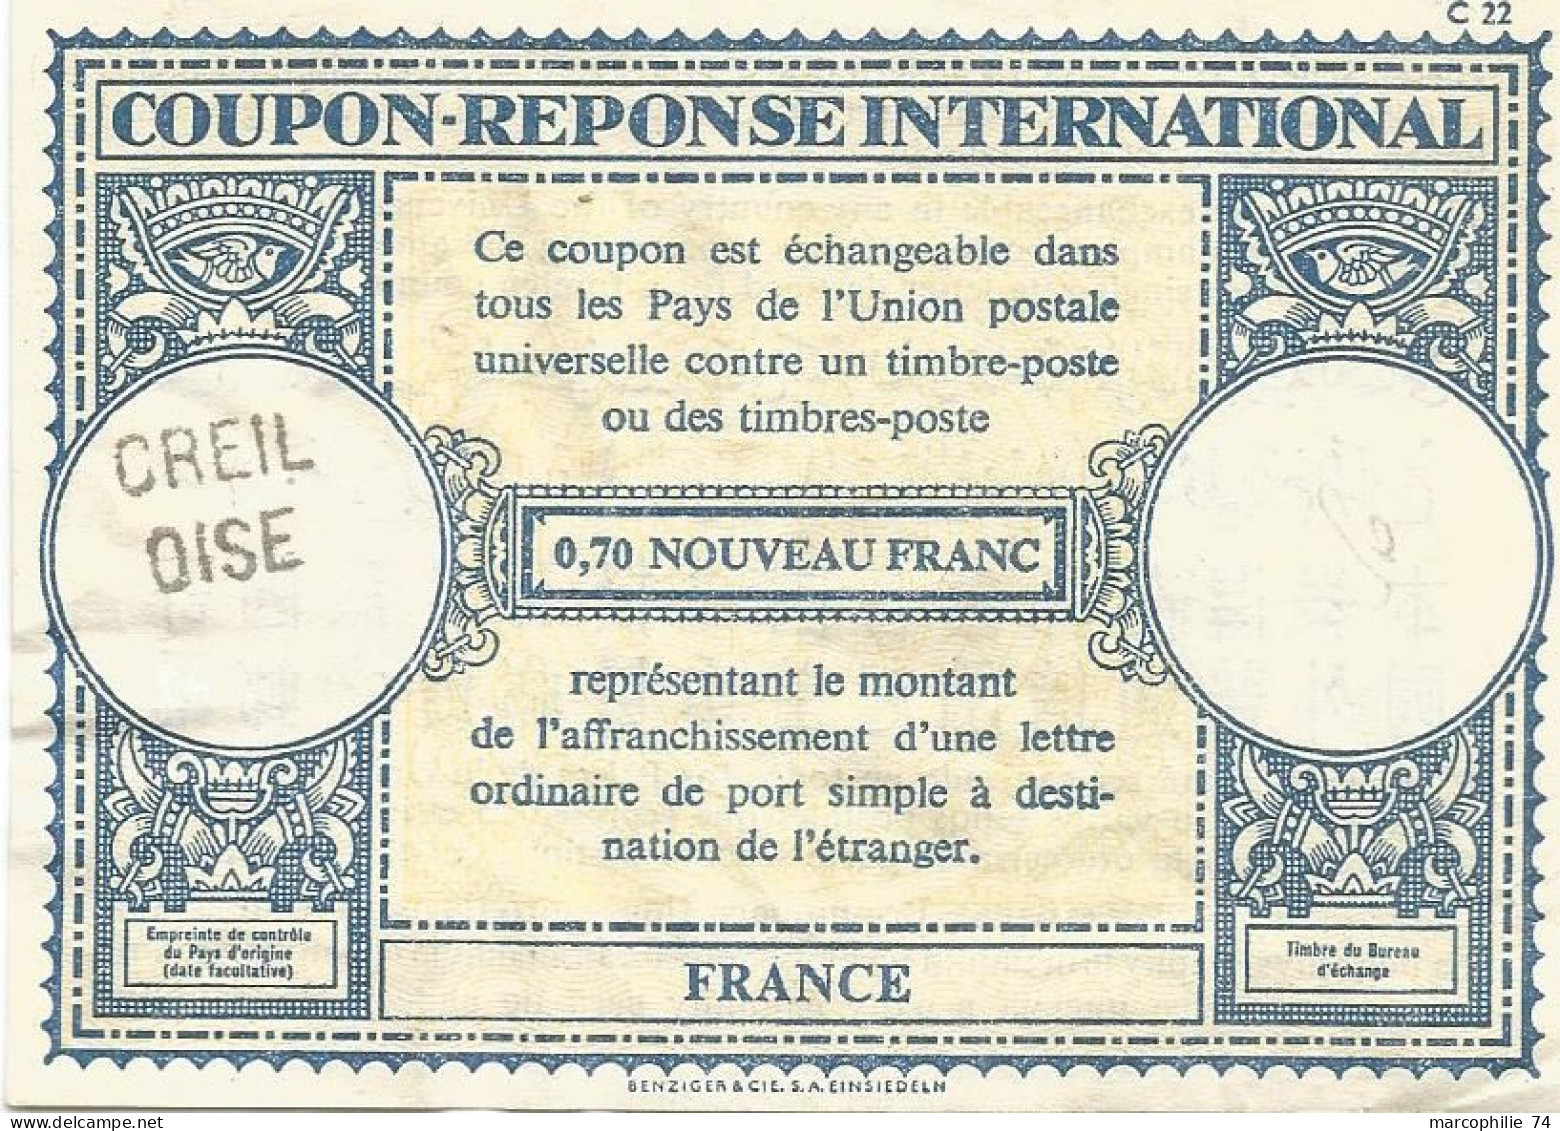 COUPON REPONSE INTERNATIONAL FRANCE 0.70 NOUVEAU FRANC GRIFFE CREIL OISE - Coupons-réponse